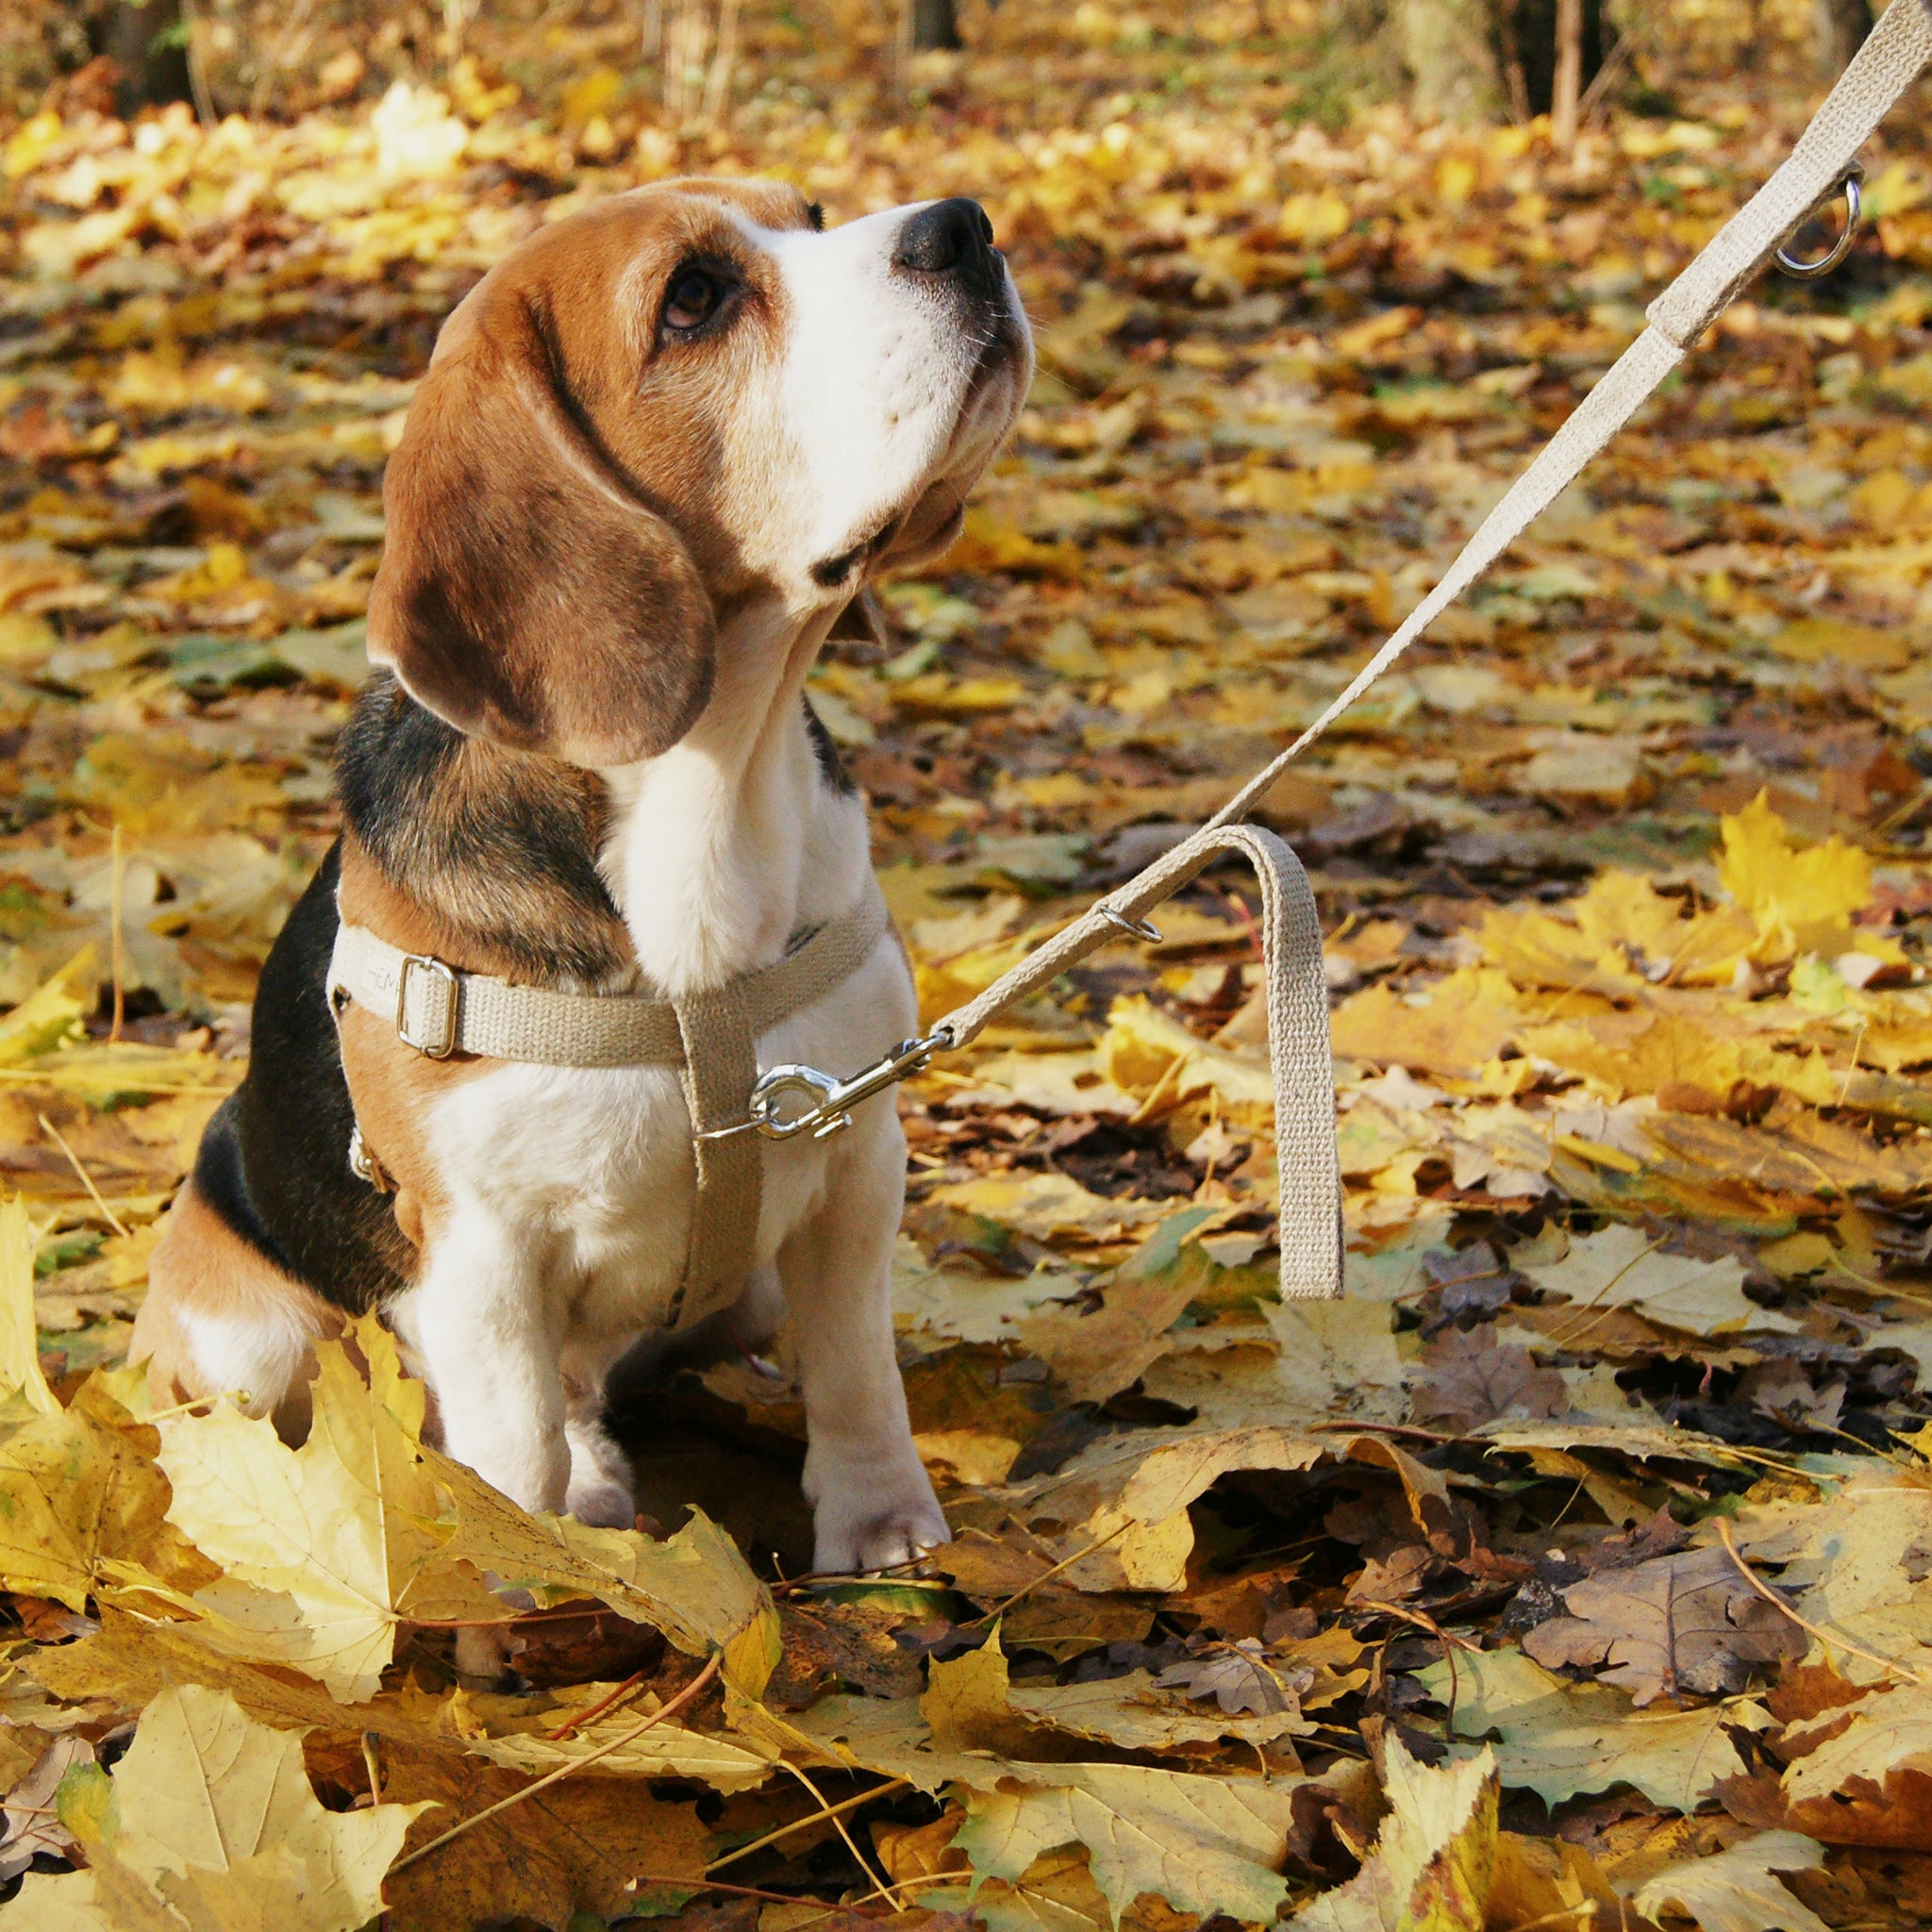 Hooman's Friend Traffic Lead on dog sat in leaves